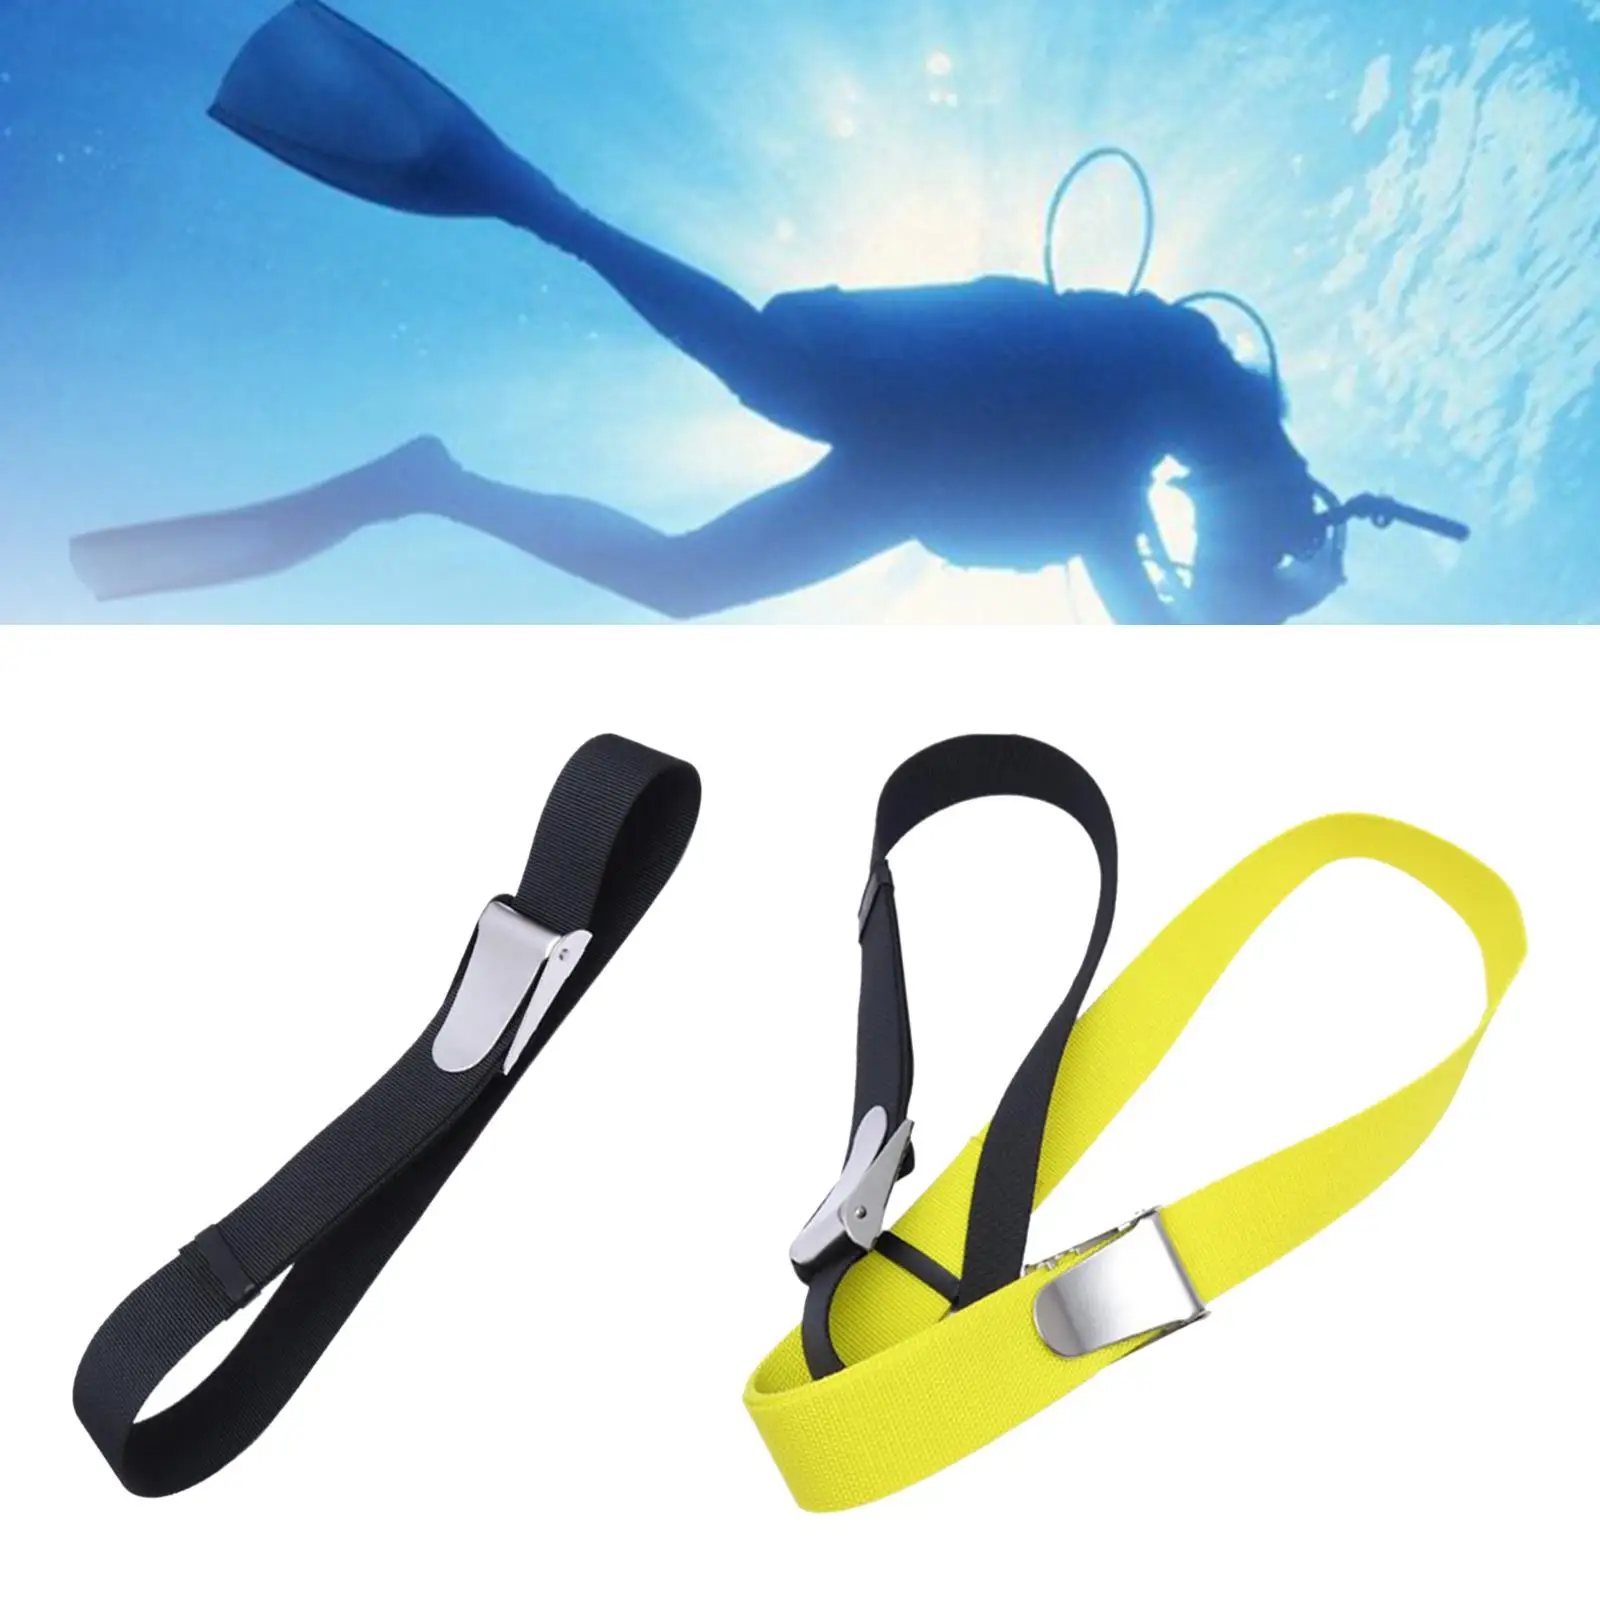 1.35 /1.8m Scuba Diving Weight Belt QR Buckle Dive Snorkeling Waist Belt Webbing Buckle Equipment Gear for Women Men Adults Kids